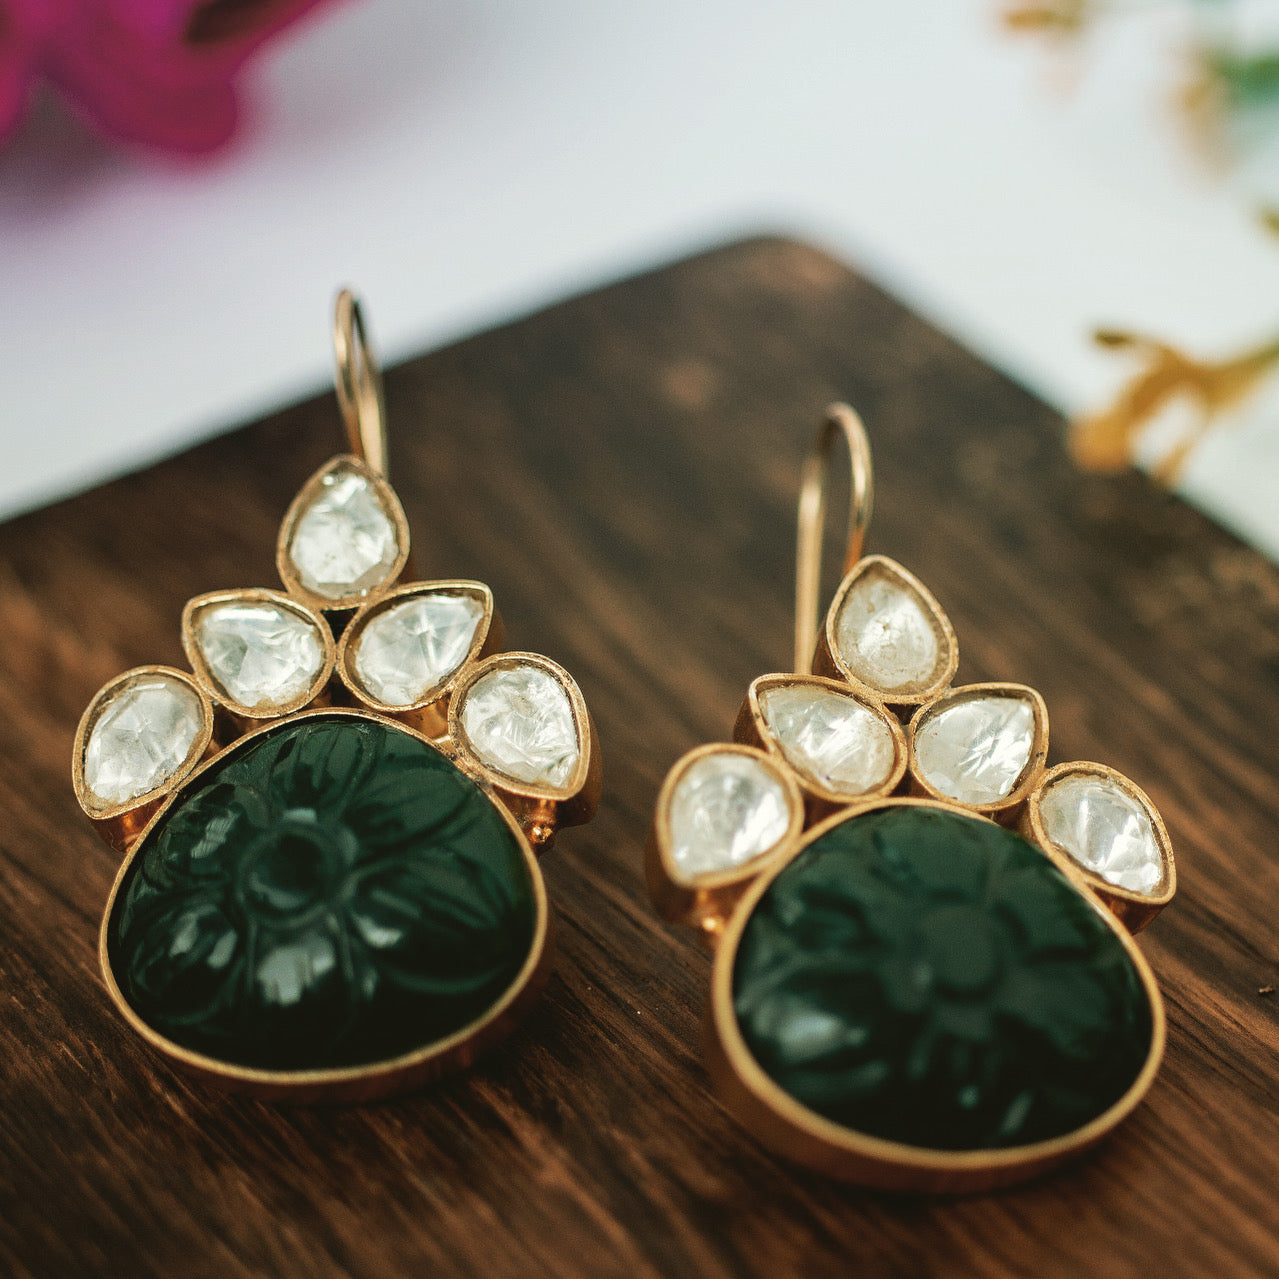 Jadau earrings with green aventurine carved stones